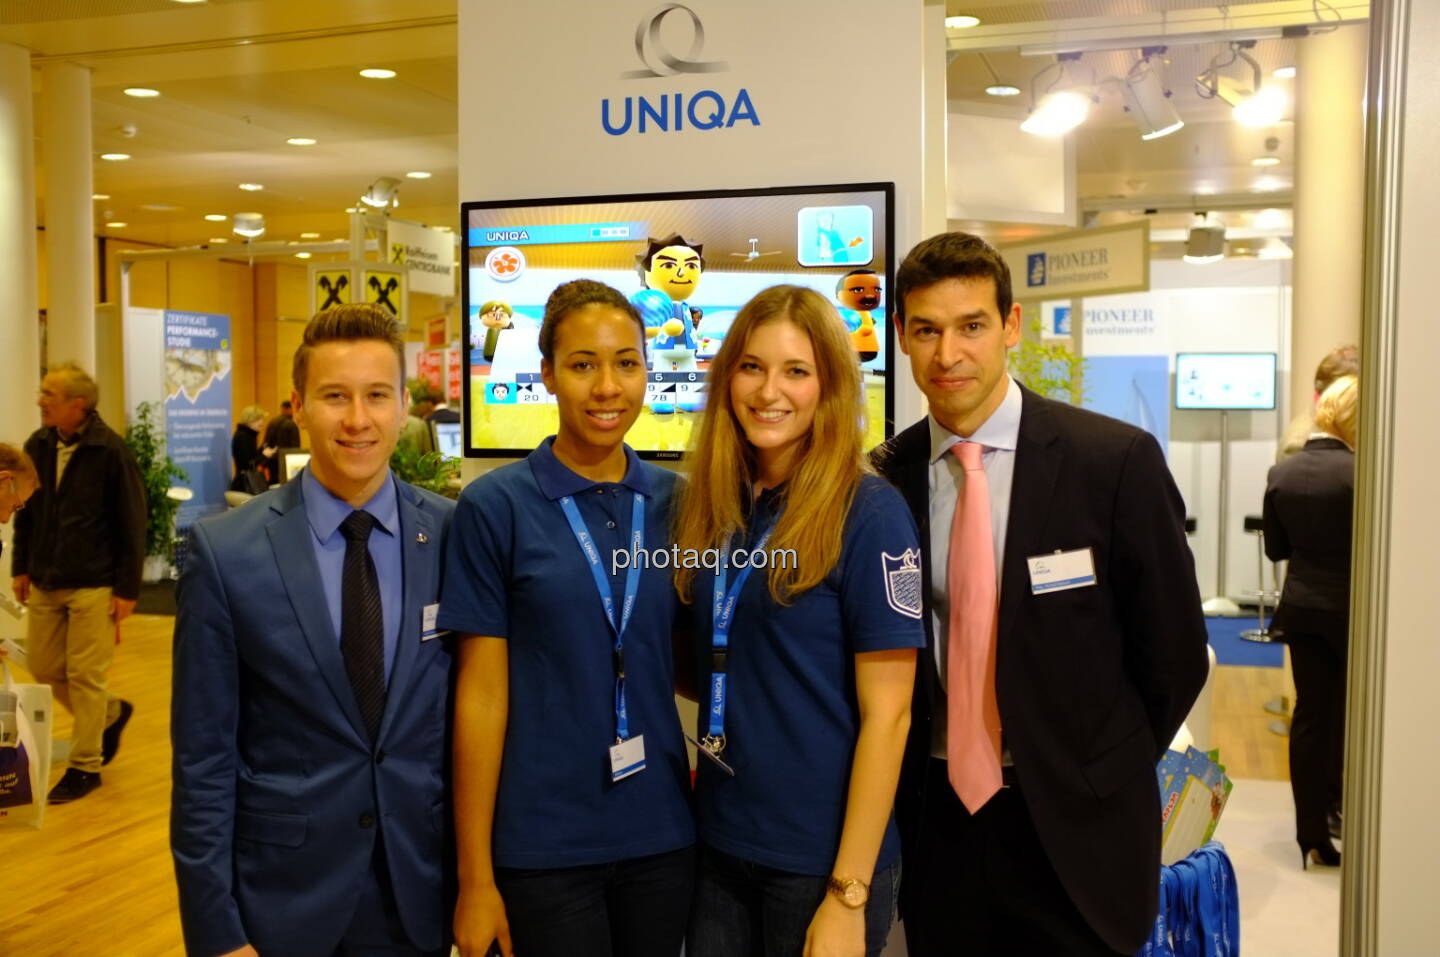 Uniqa auf der Gewinn Messe 2013: Michael Oplustil und Team